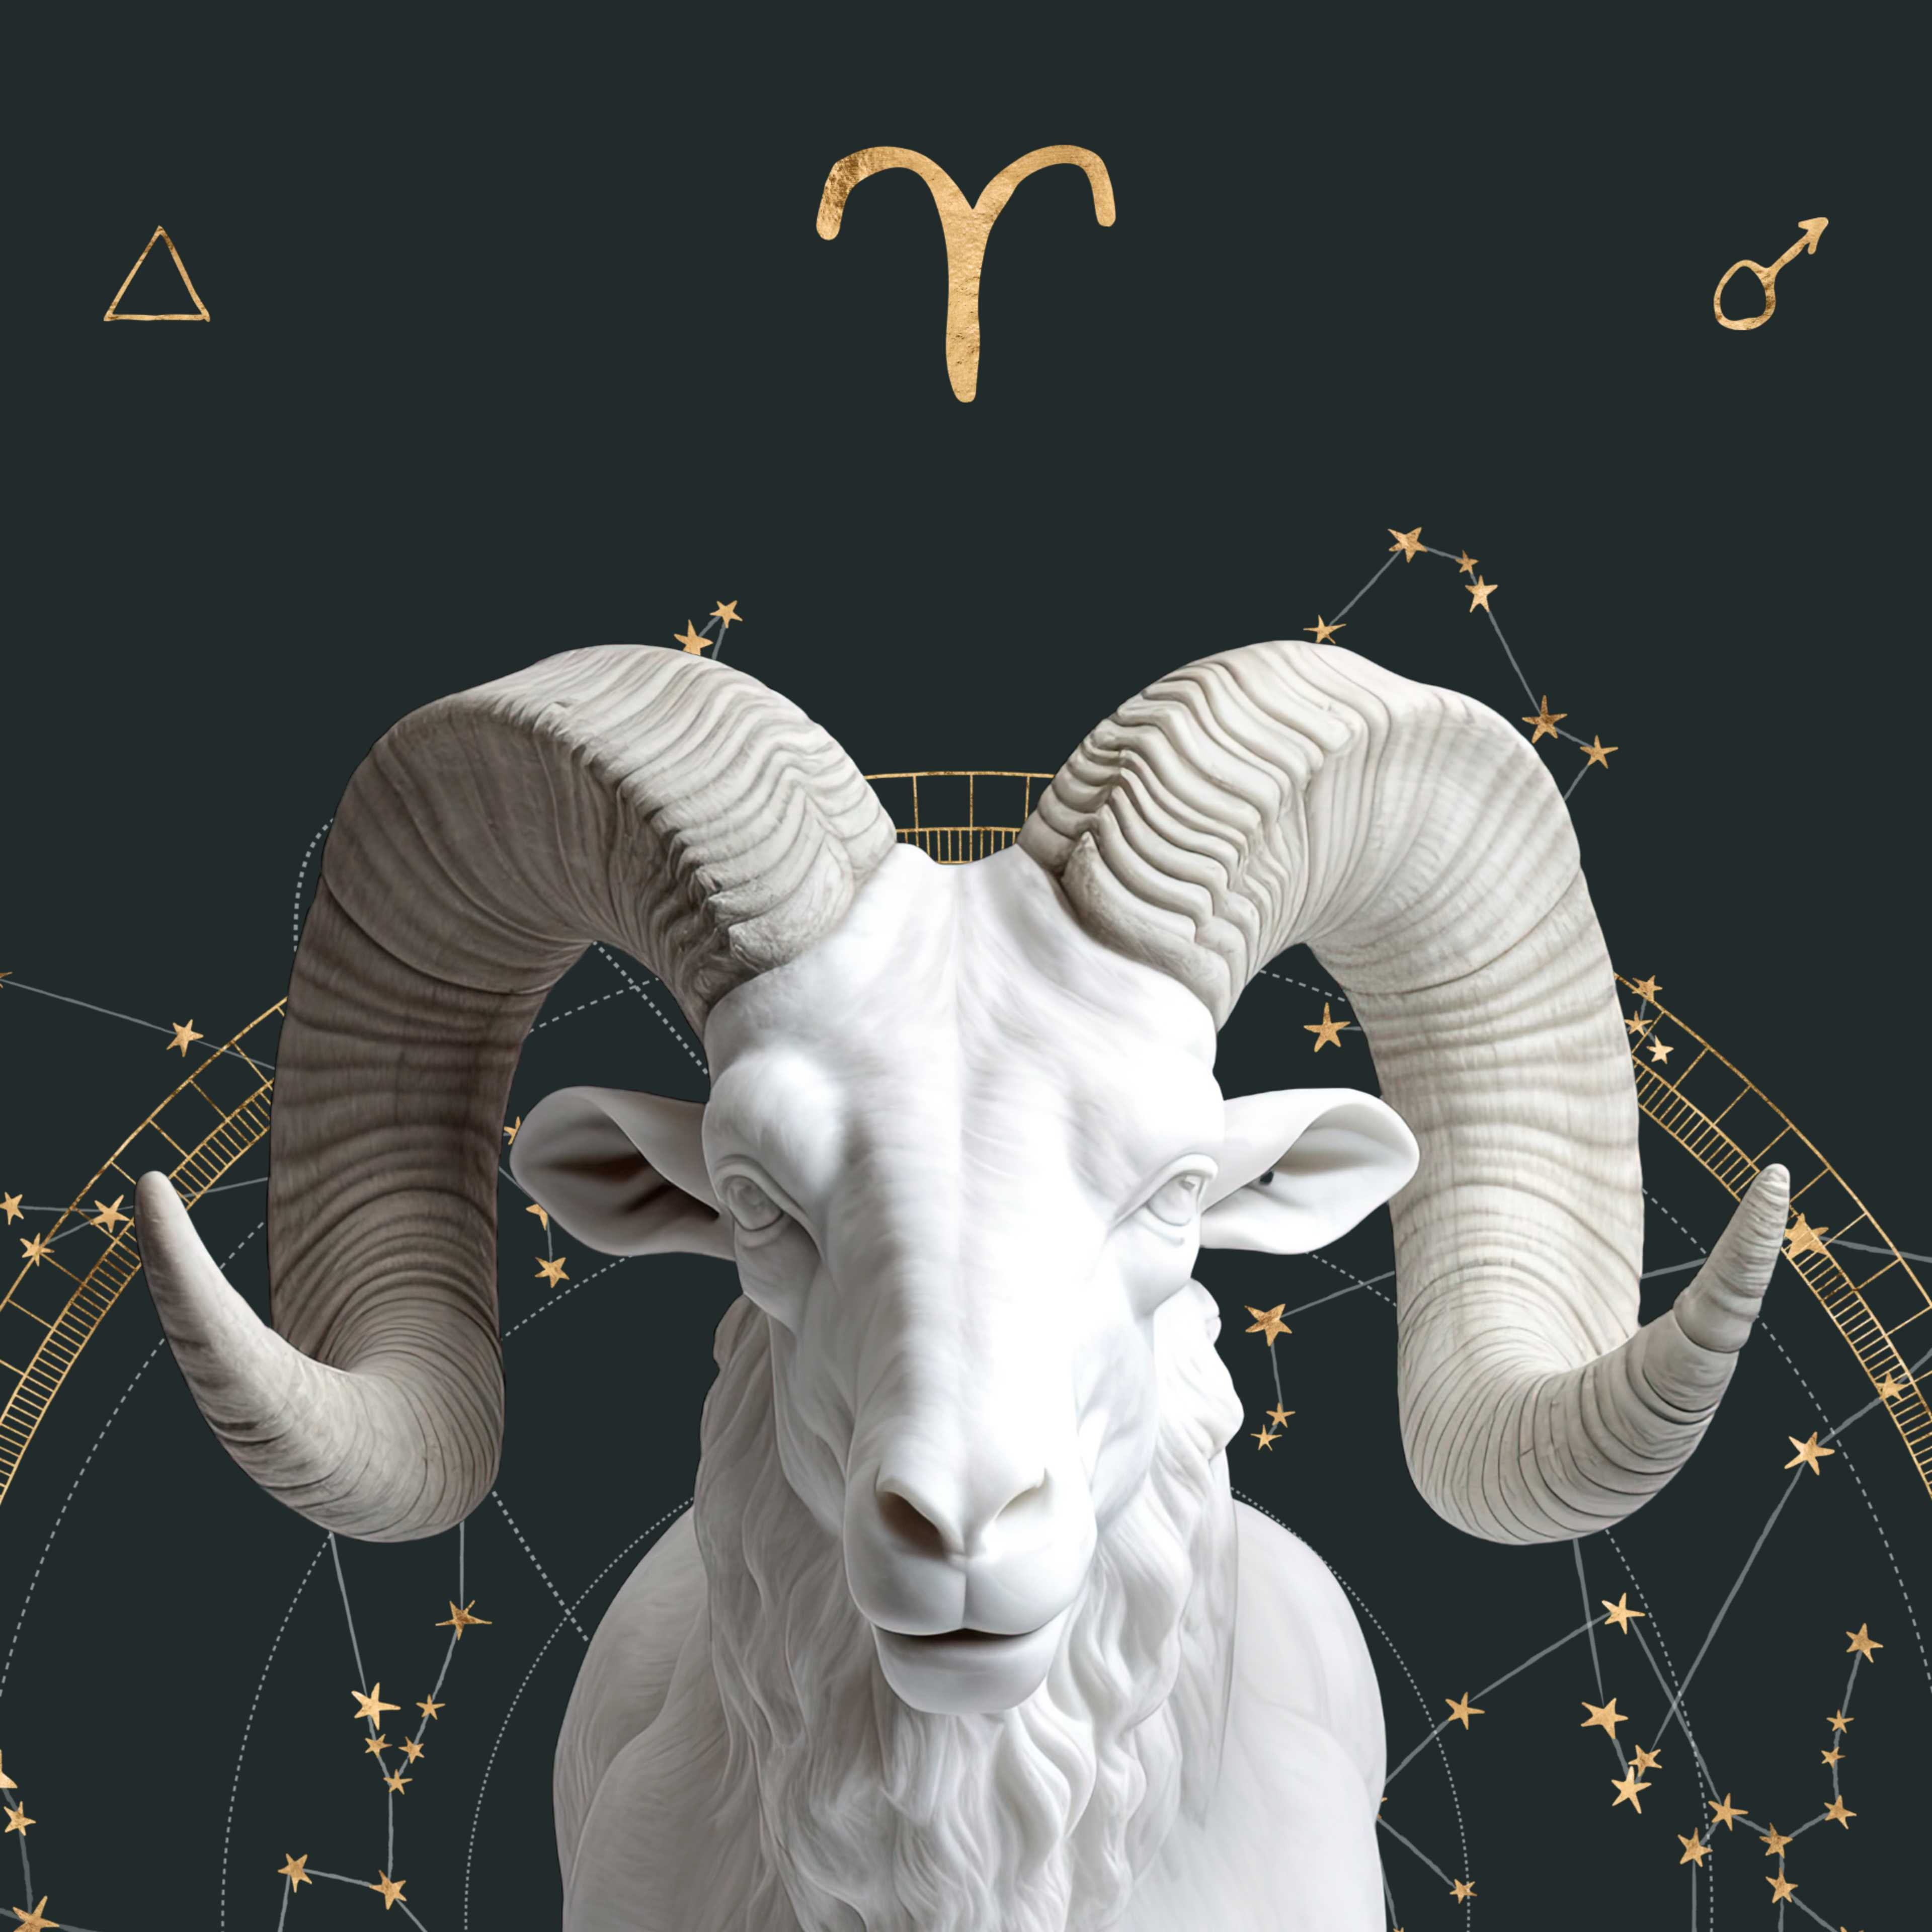 Aries Zodiac Sign